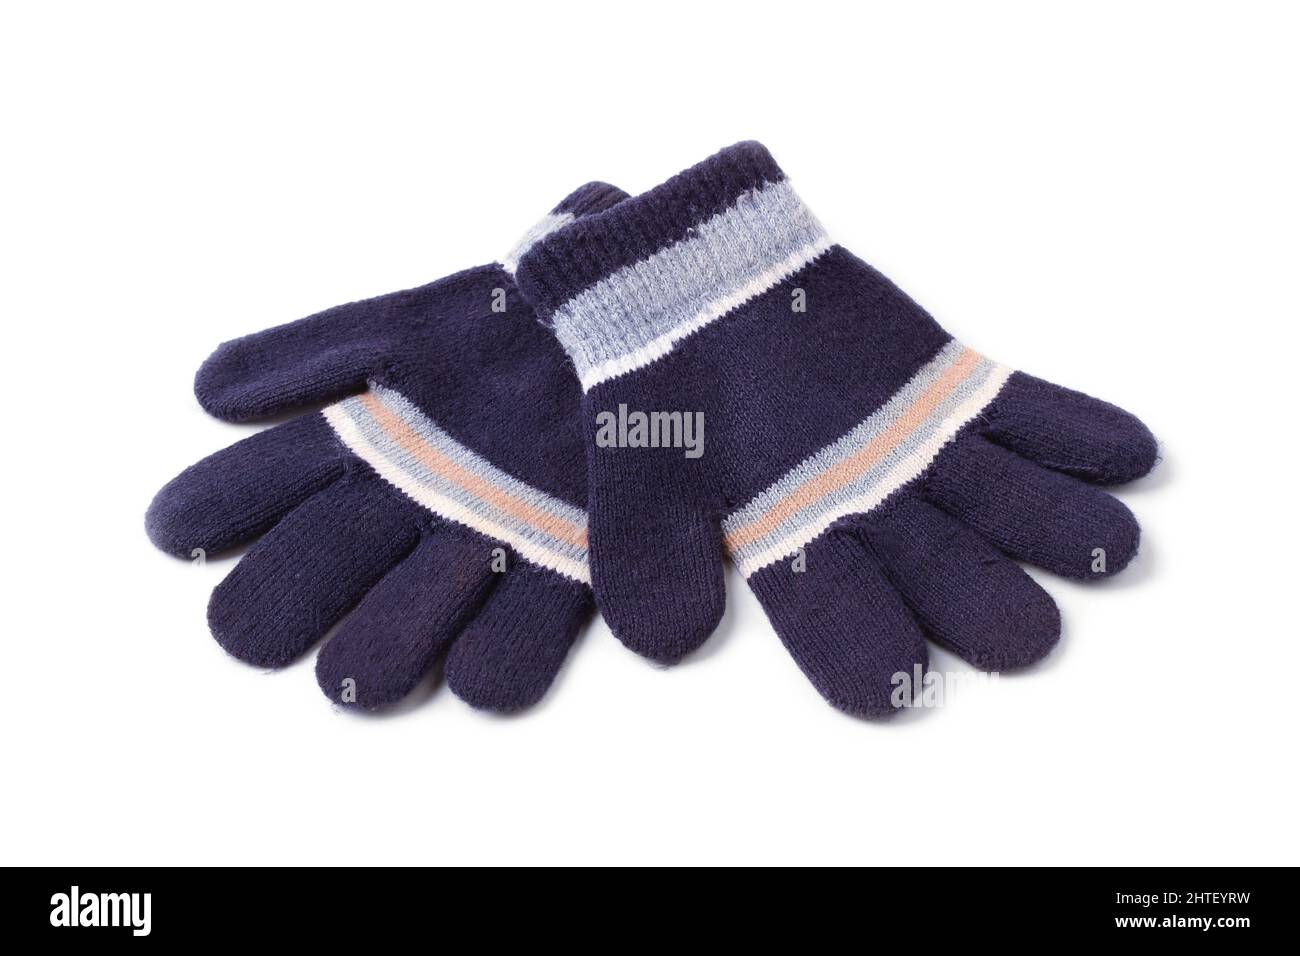 Gants tricotés en laine pour enfants isolés sur du blanc Photo Stock - Alamy